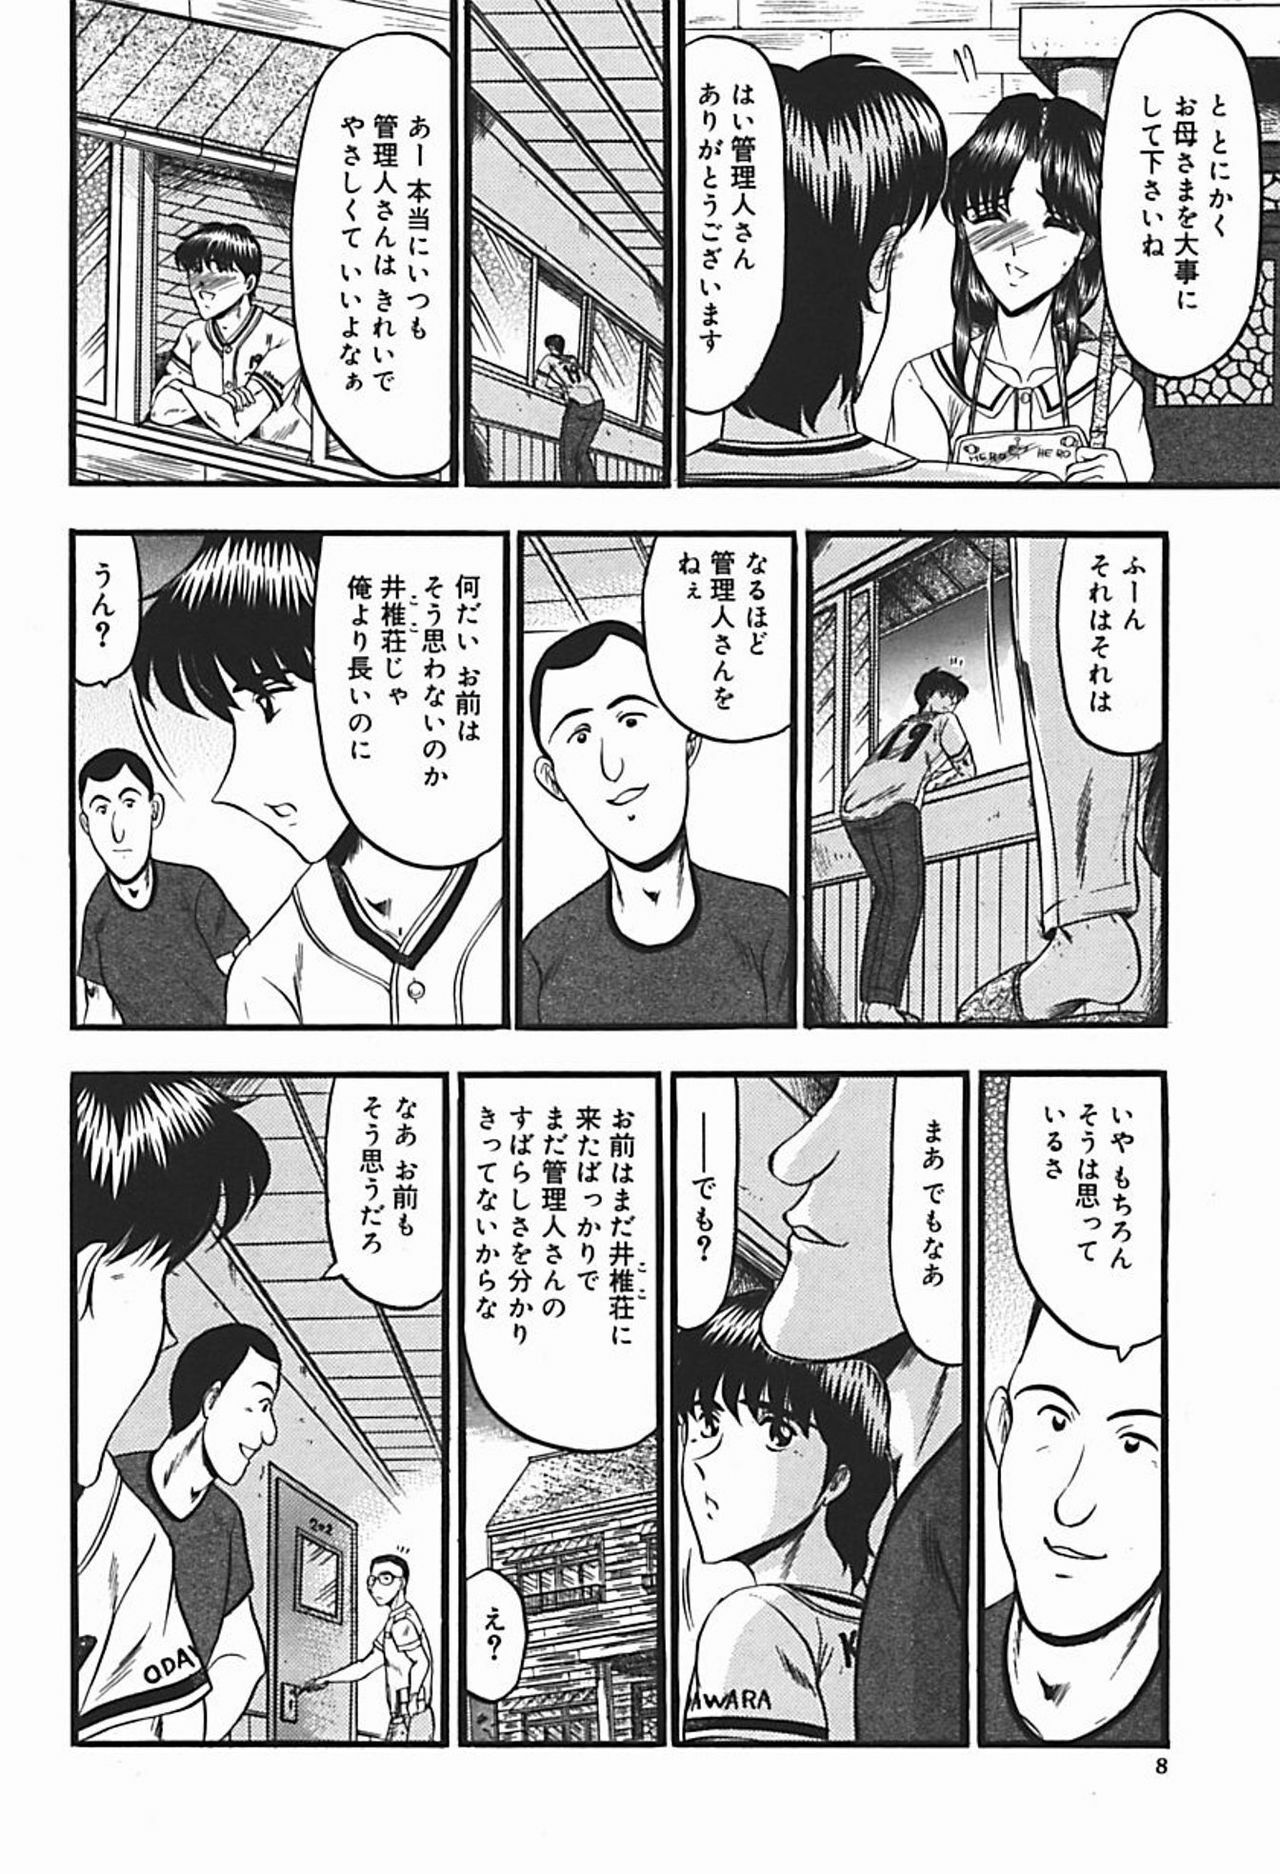 [Komura Saki] Inshuu ~Taenaru Hanabana no Shirabe~ page 13 full